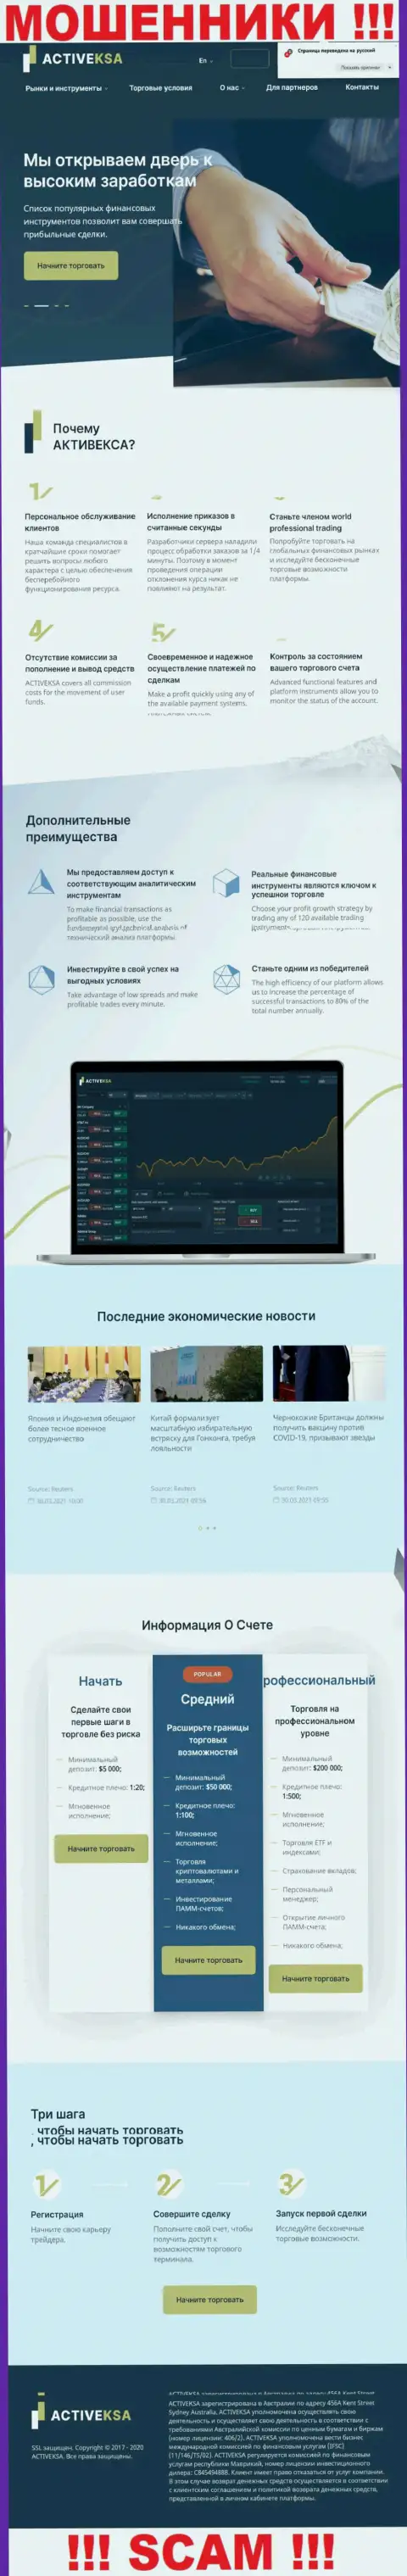 Активекса Ком - это официальный сайт мошенников Activeksa